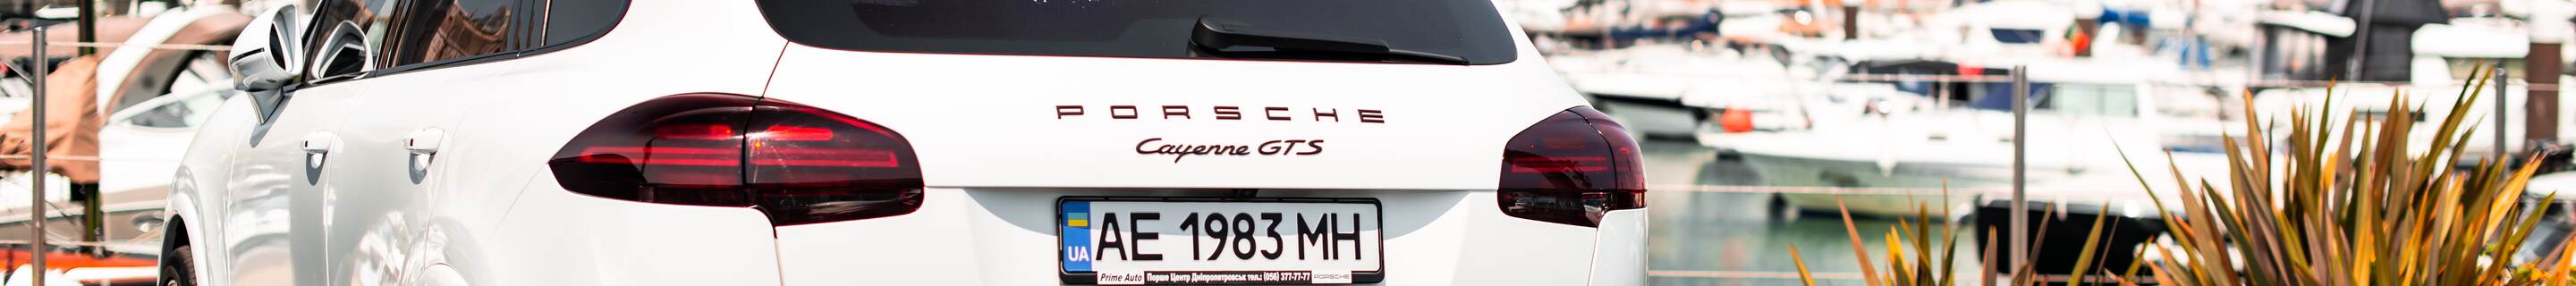 Porsche 958 Cayenne GTS MkII